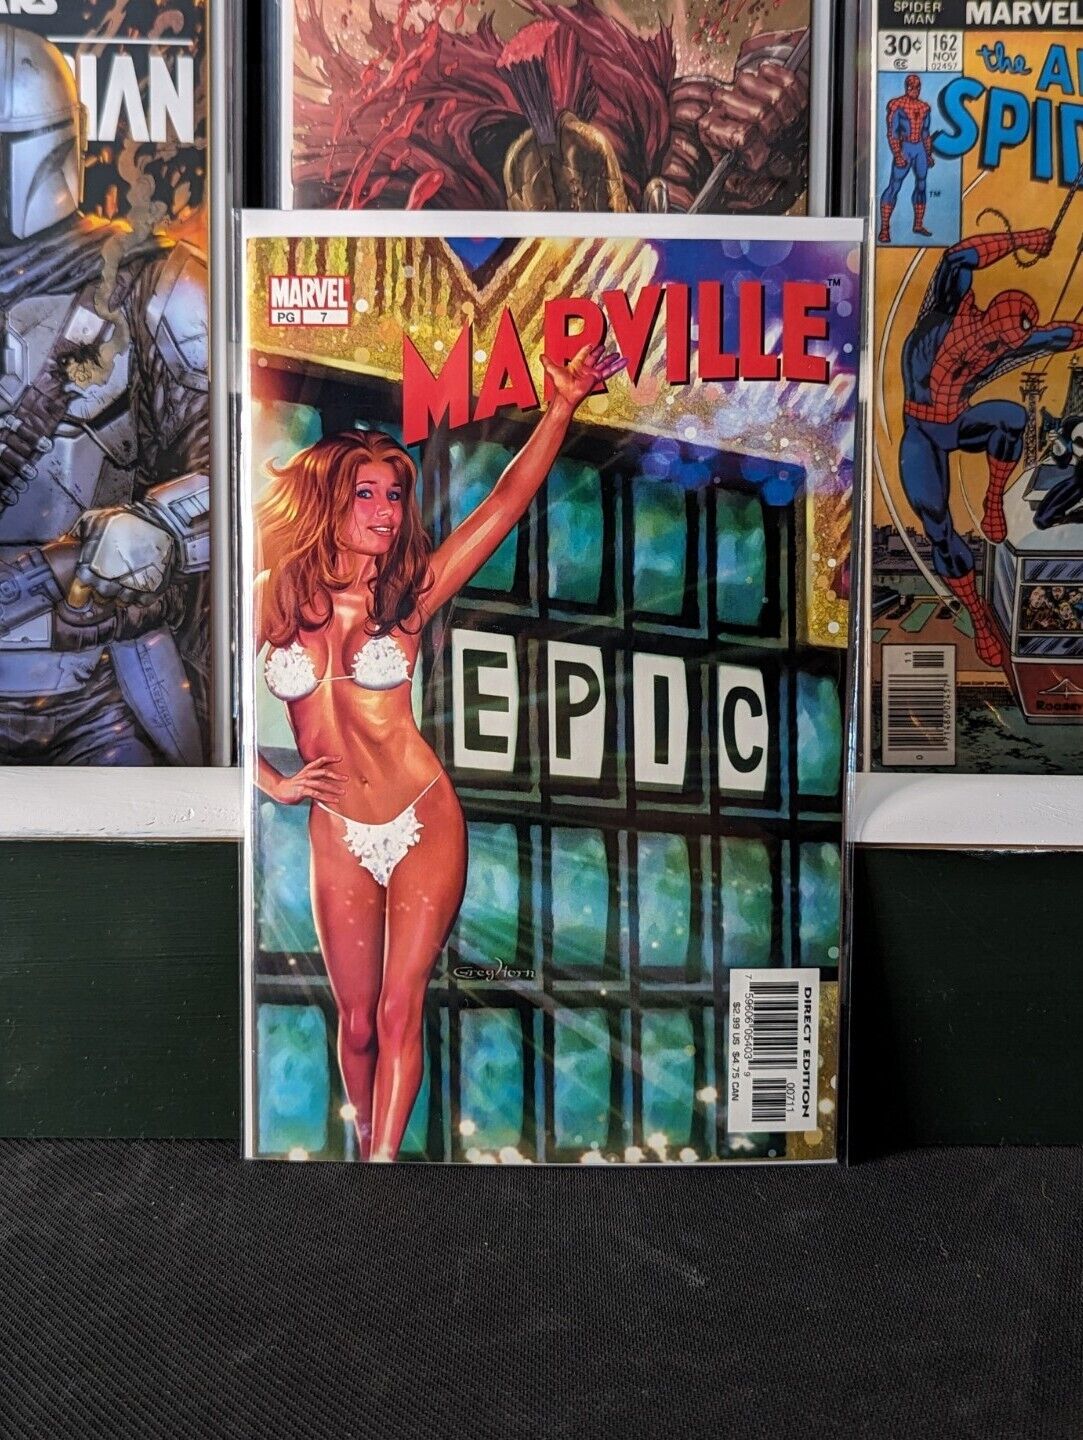 Marville #7 Greg Horn Cover Art (2003) Marvel